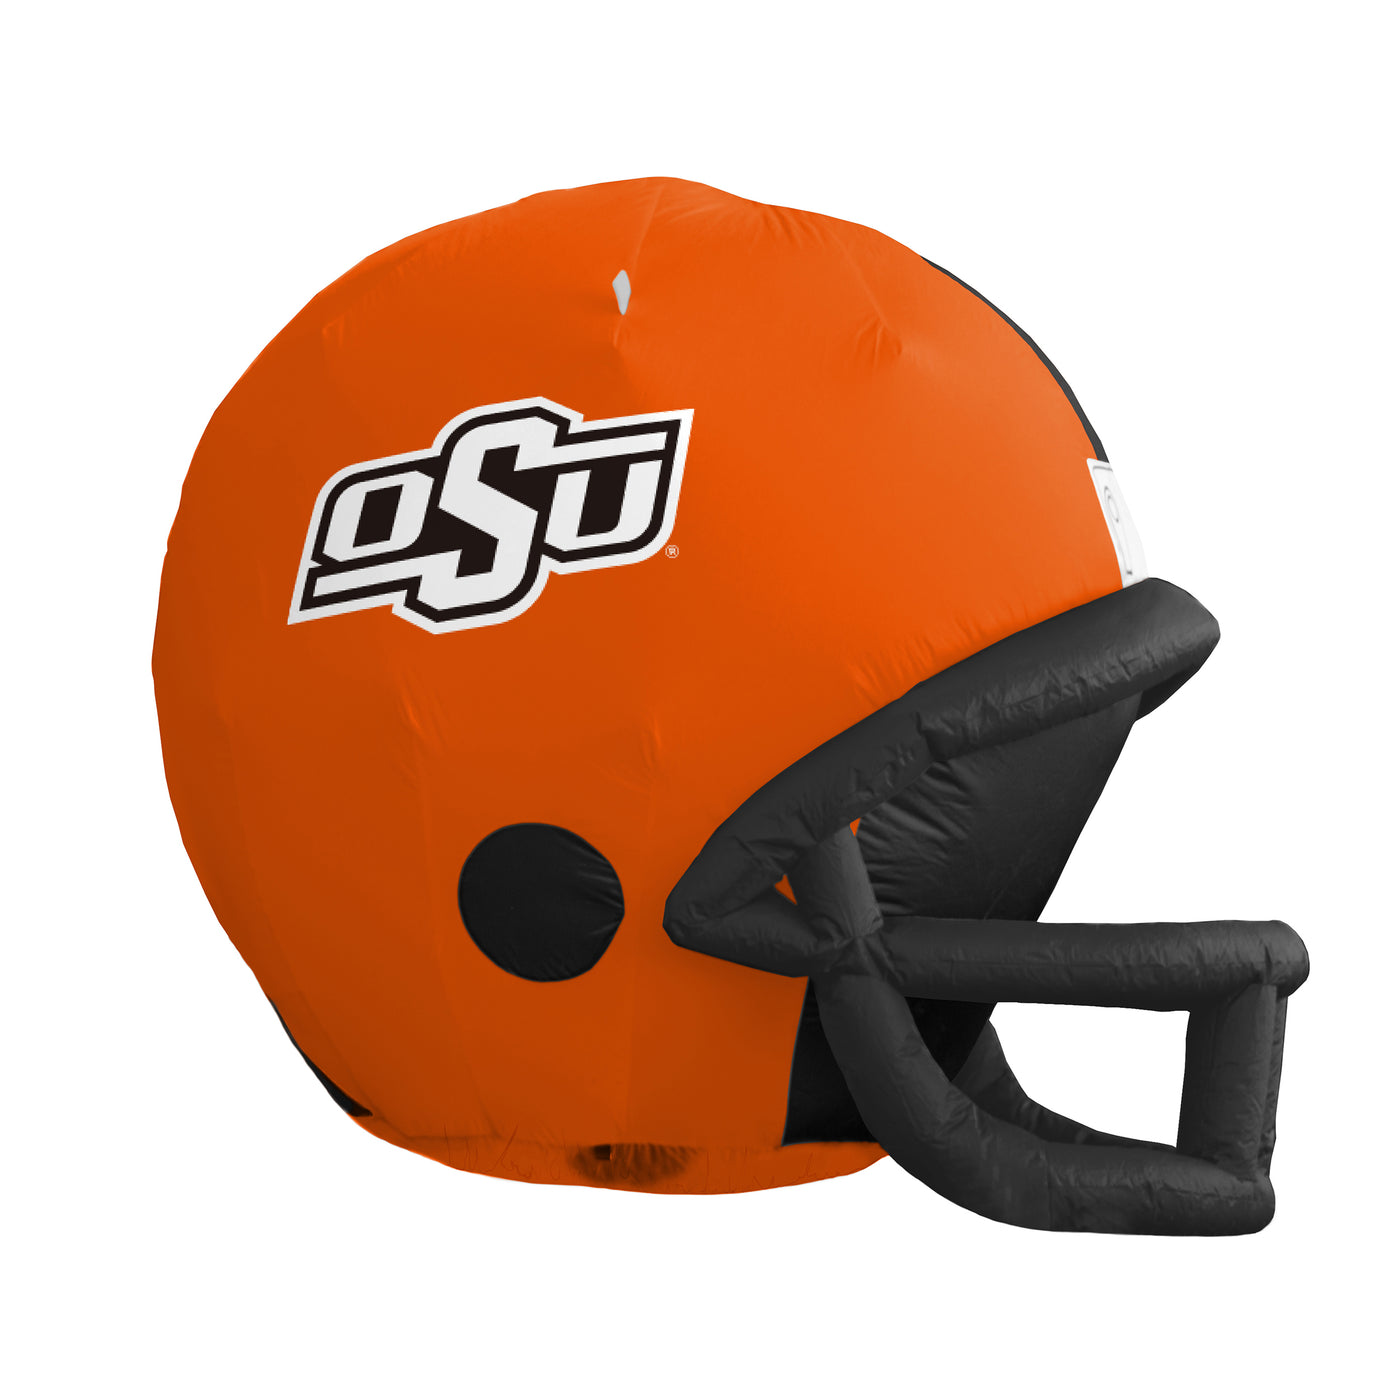 OK State Yard Inflatable Helmet